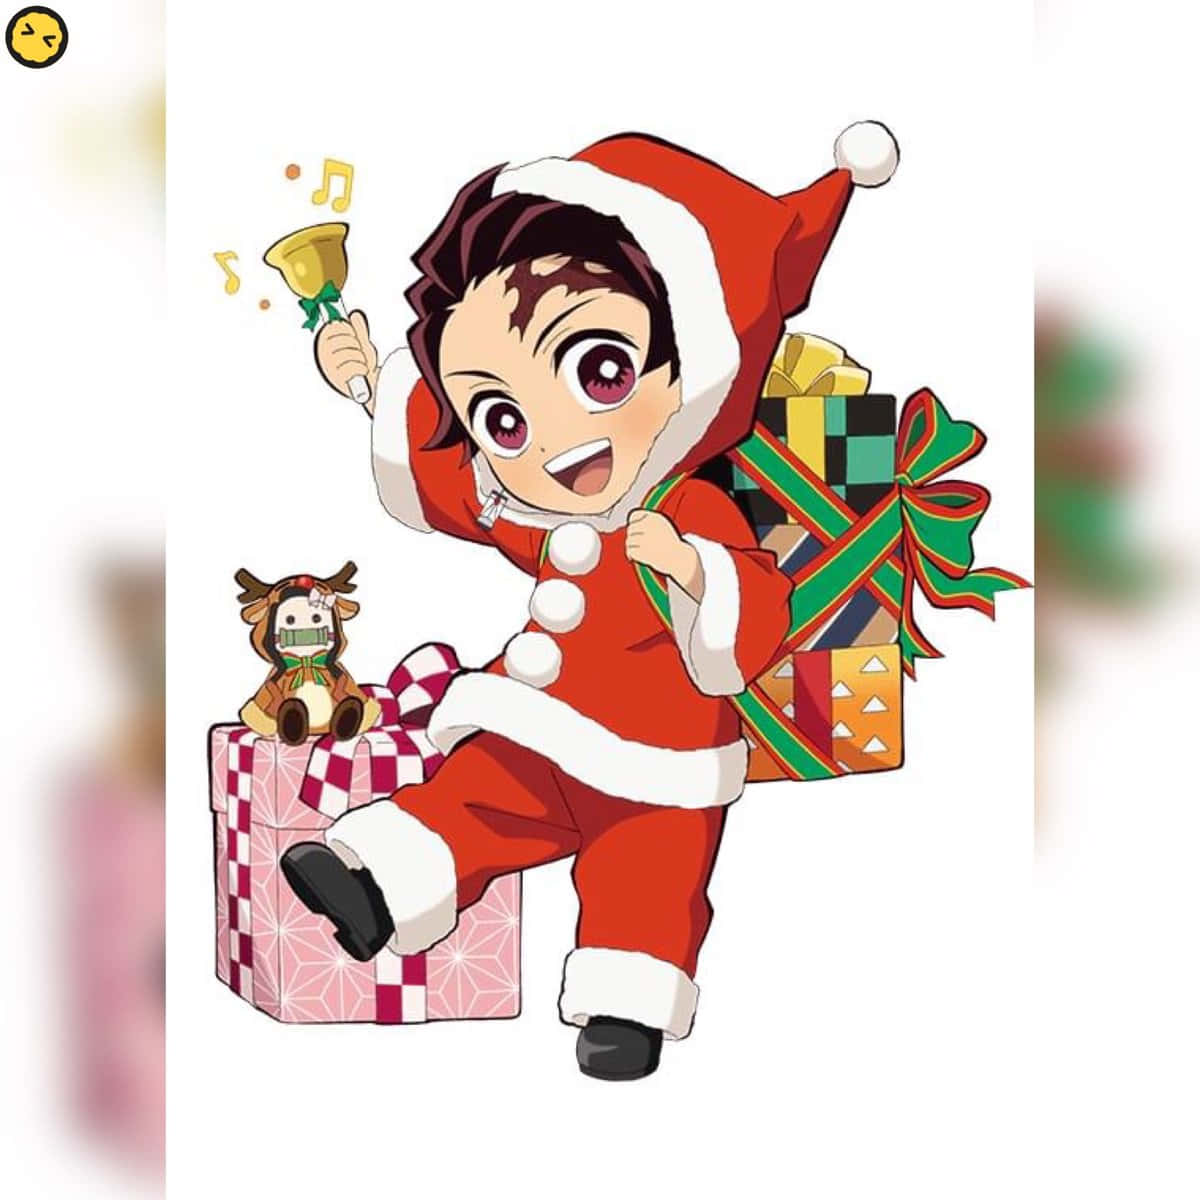 Feiernsie Die Magische Jahreszeit Mit Dem Anime Weihnachten